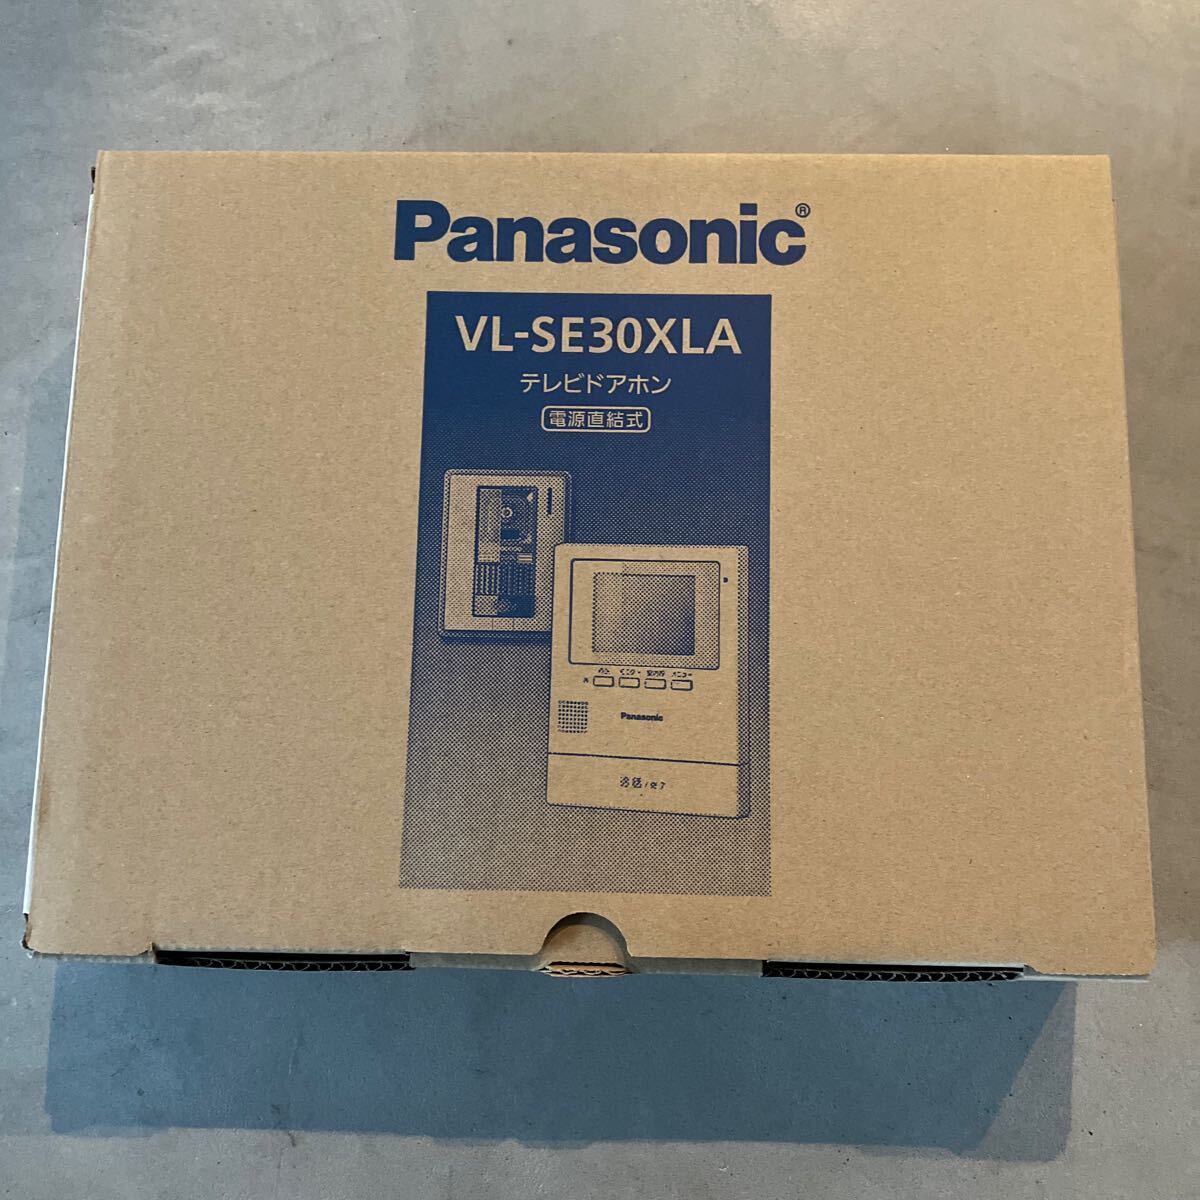 Panasonic パナソニック VL-SE30XLA テレビドアホン 電源直結式 住宅用インターホン の画像1